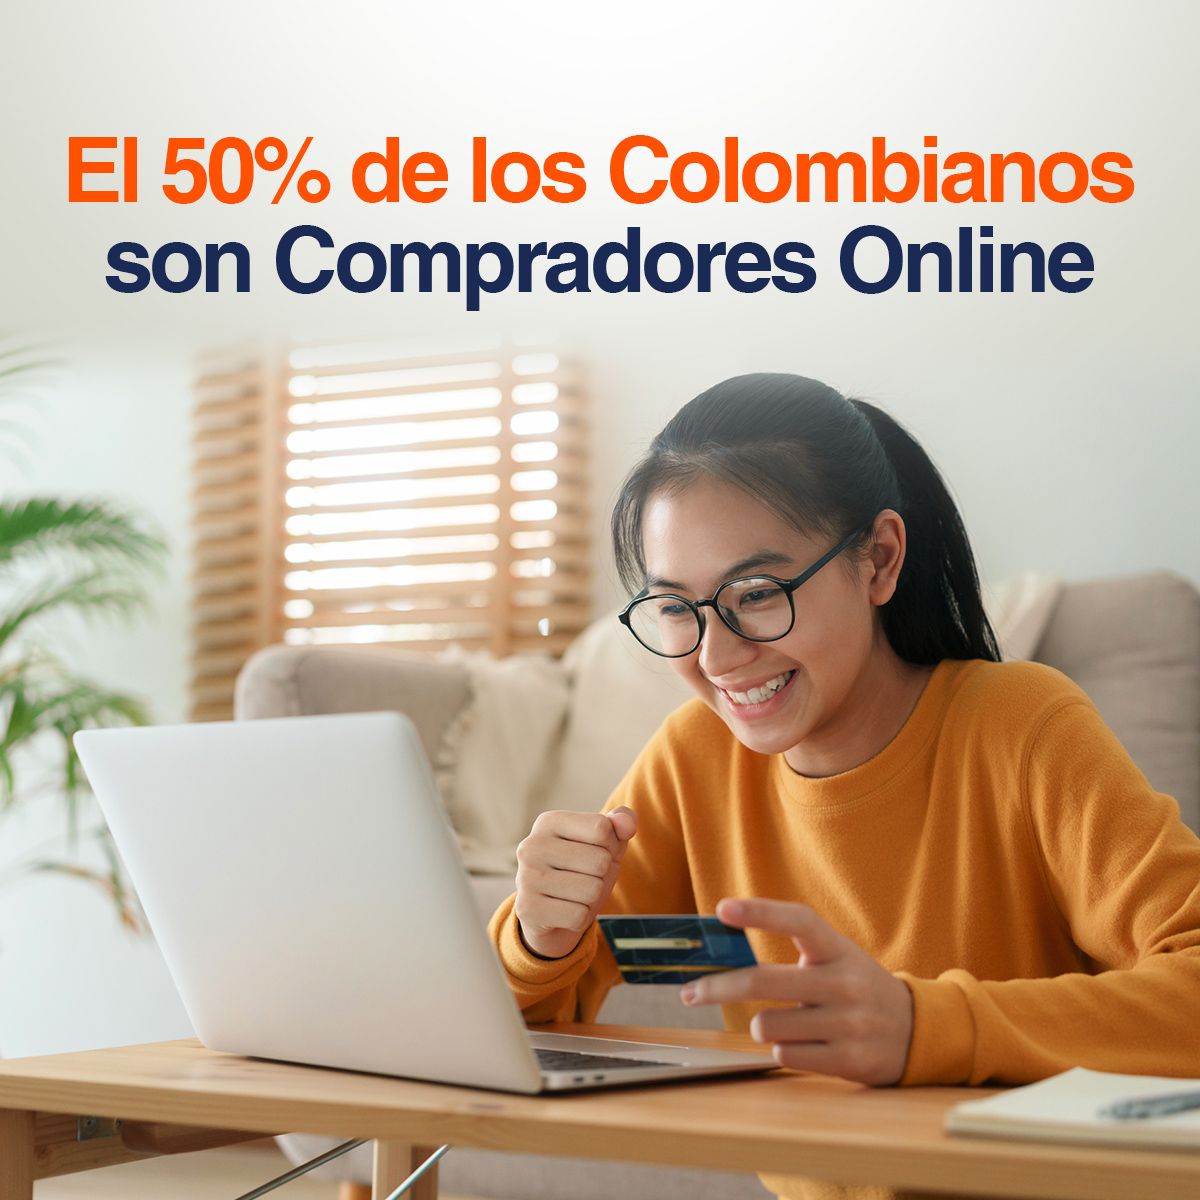 El 50% de los Colombianos son Compradores Online